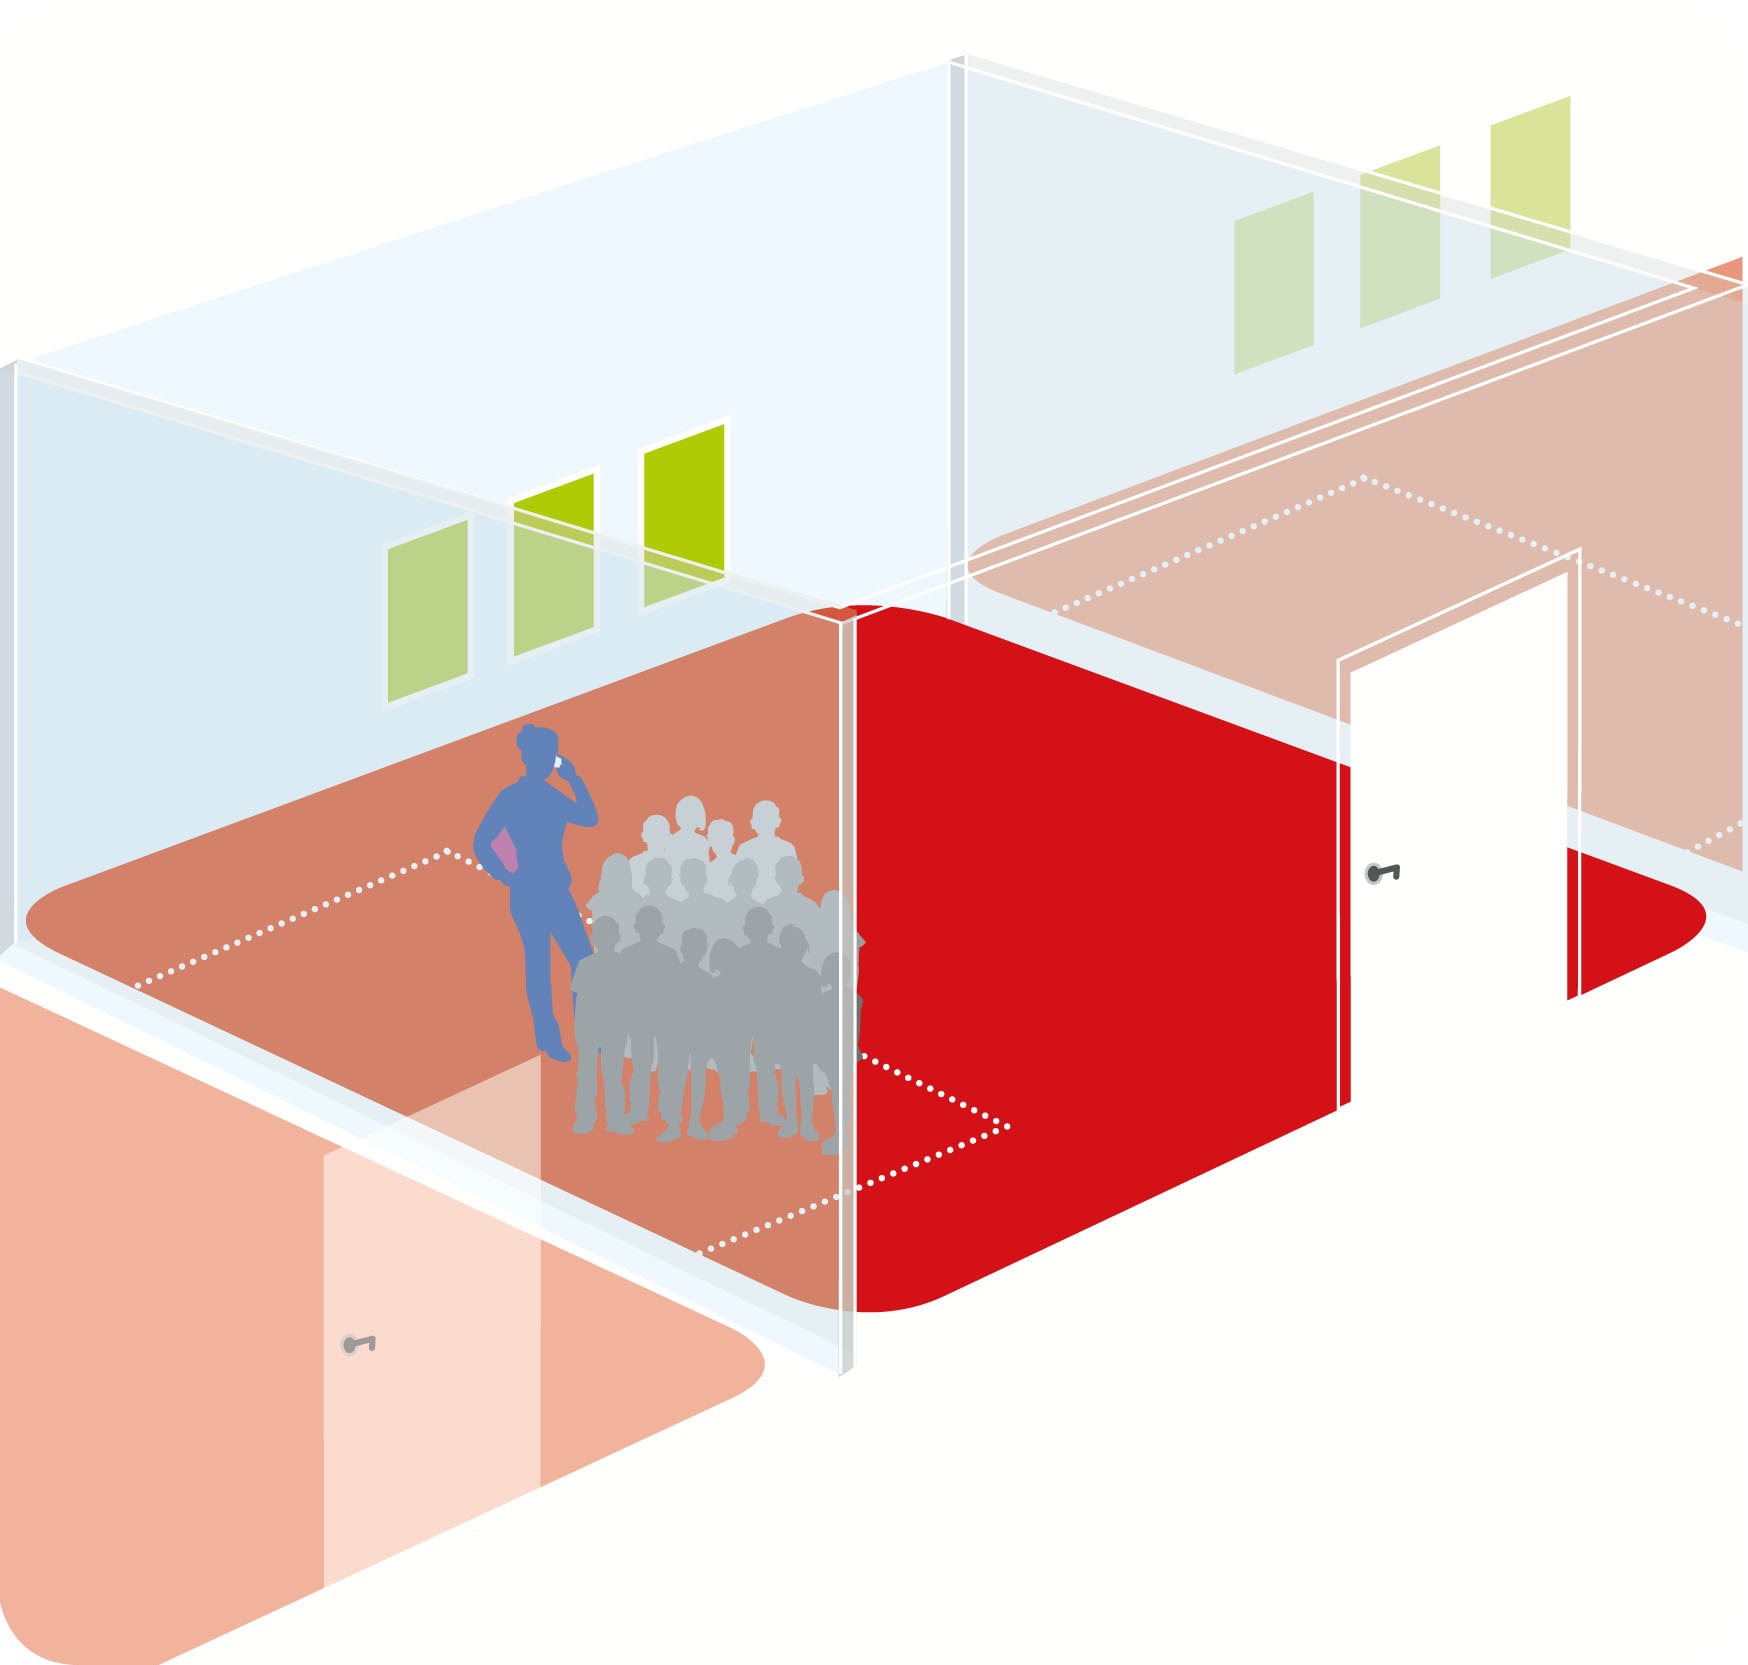 Die Klassenraumgrafik skizziert den Bereich, der die beste Schutzzone im geschlossenen Raum im Fall eines Amoklaufs bietet - abseits womöglicher Schussachsen